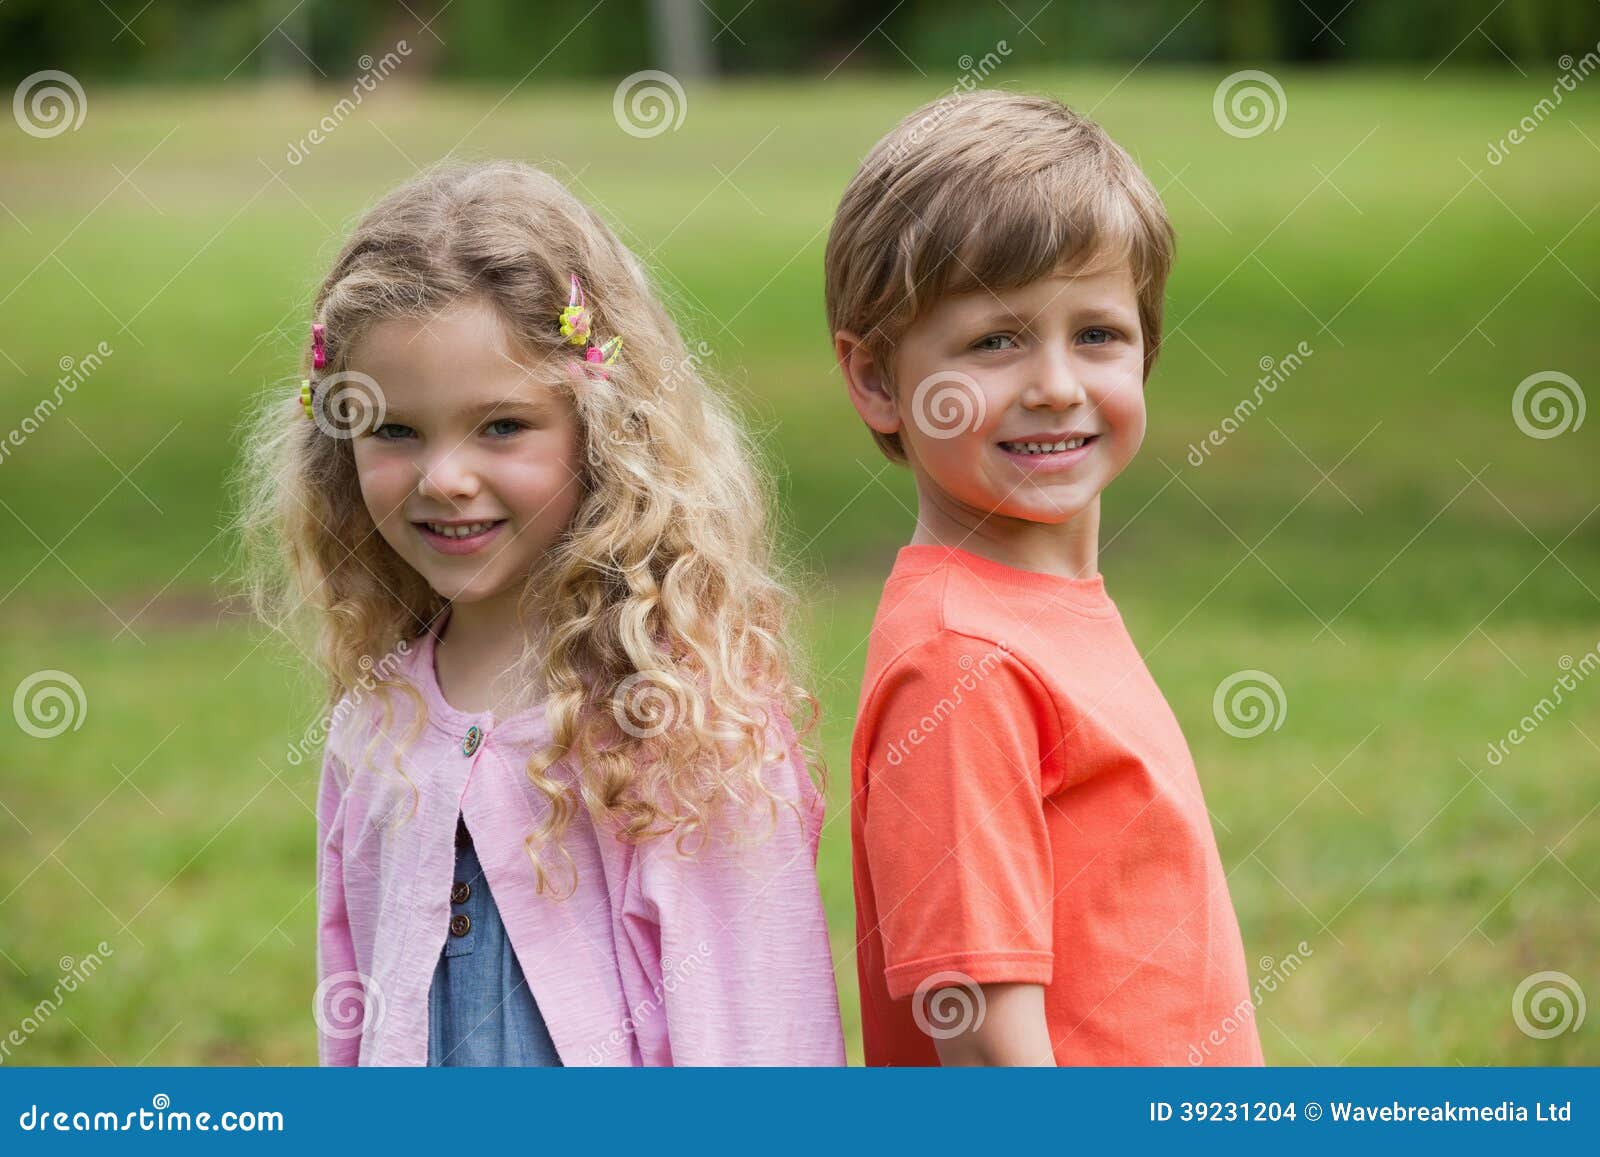 Lächelnde Kinder, die am Park stehen. Porträt von zwei lächelnden Kindern, die am Park stehen